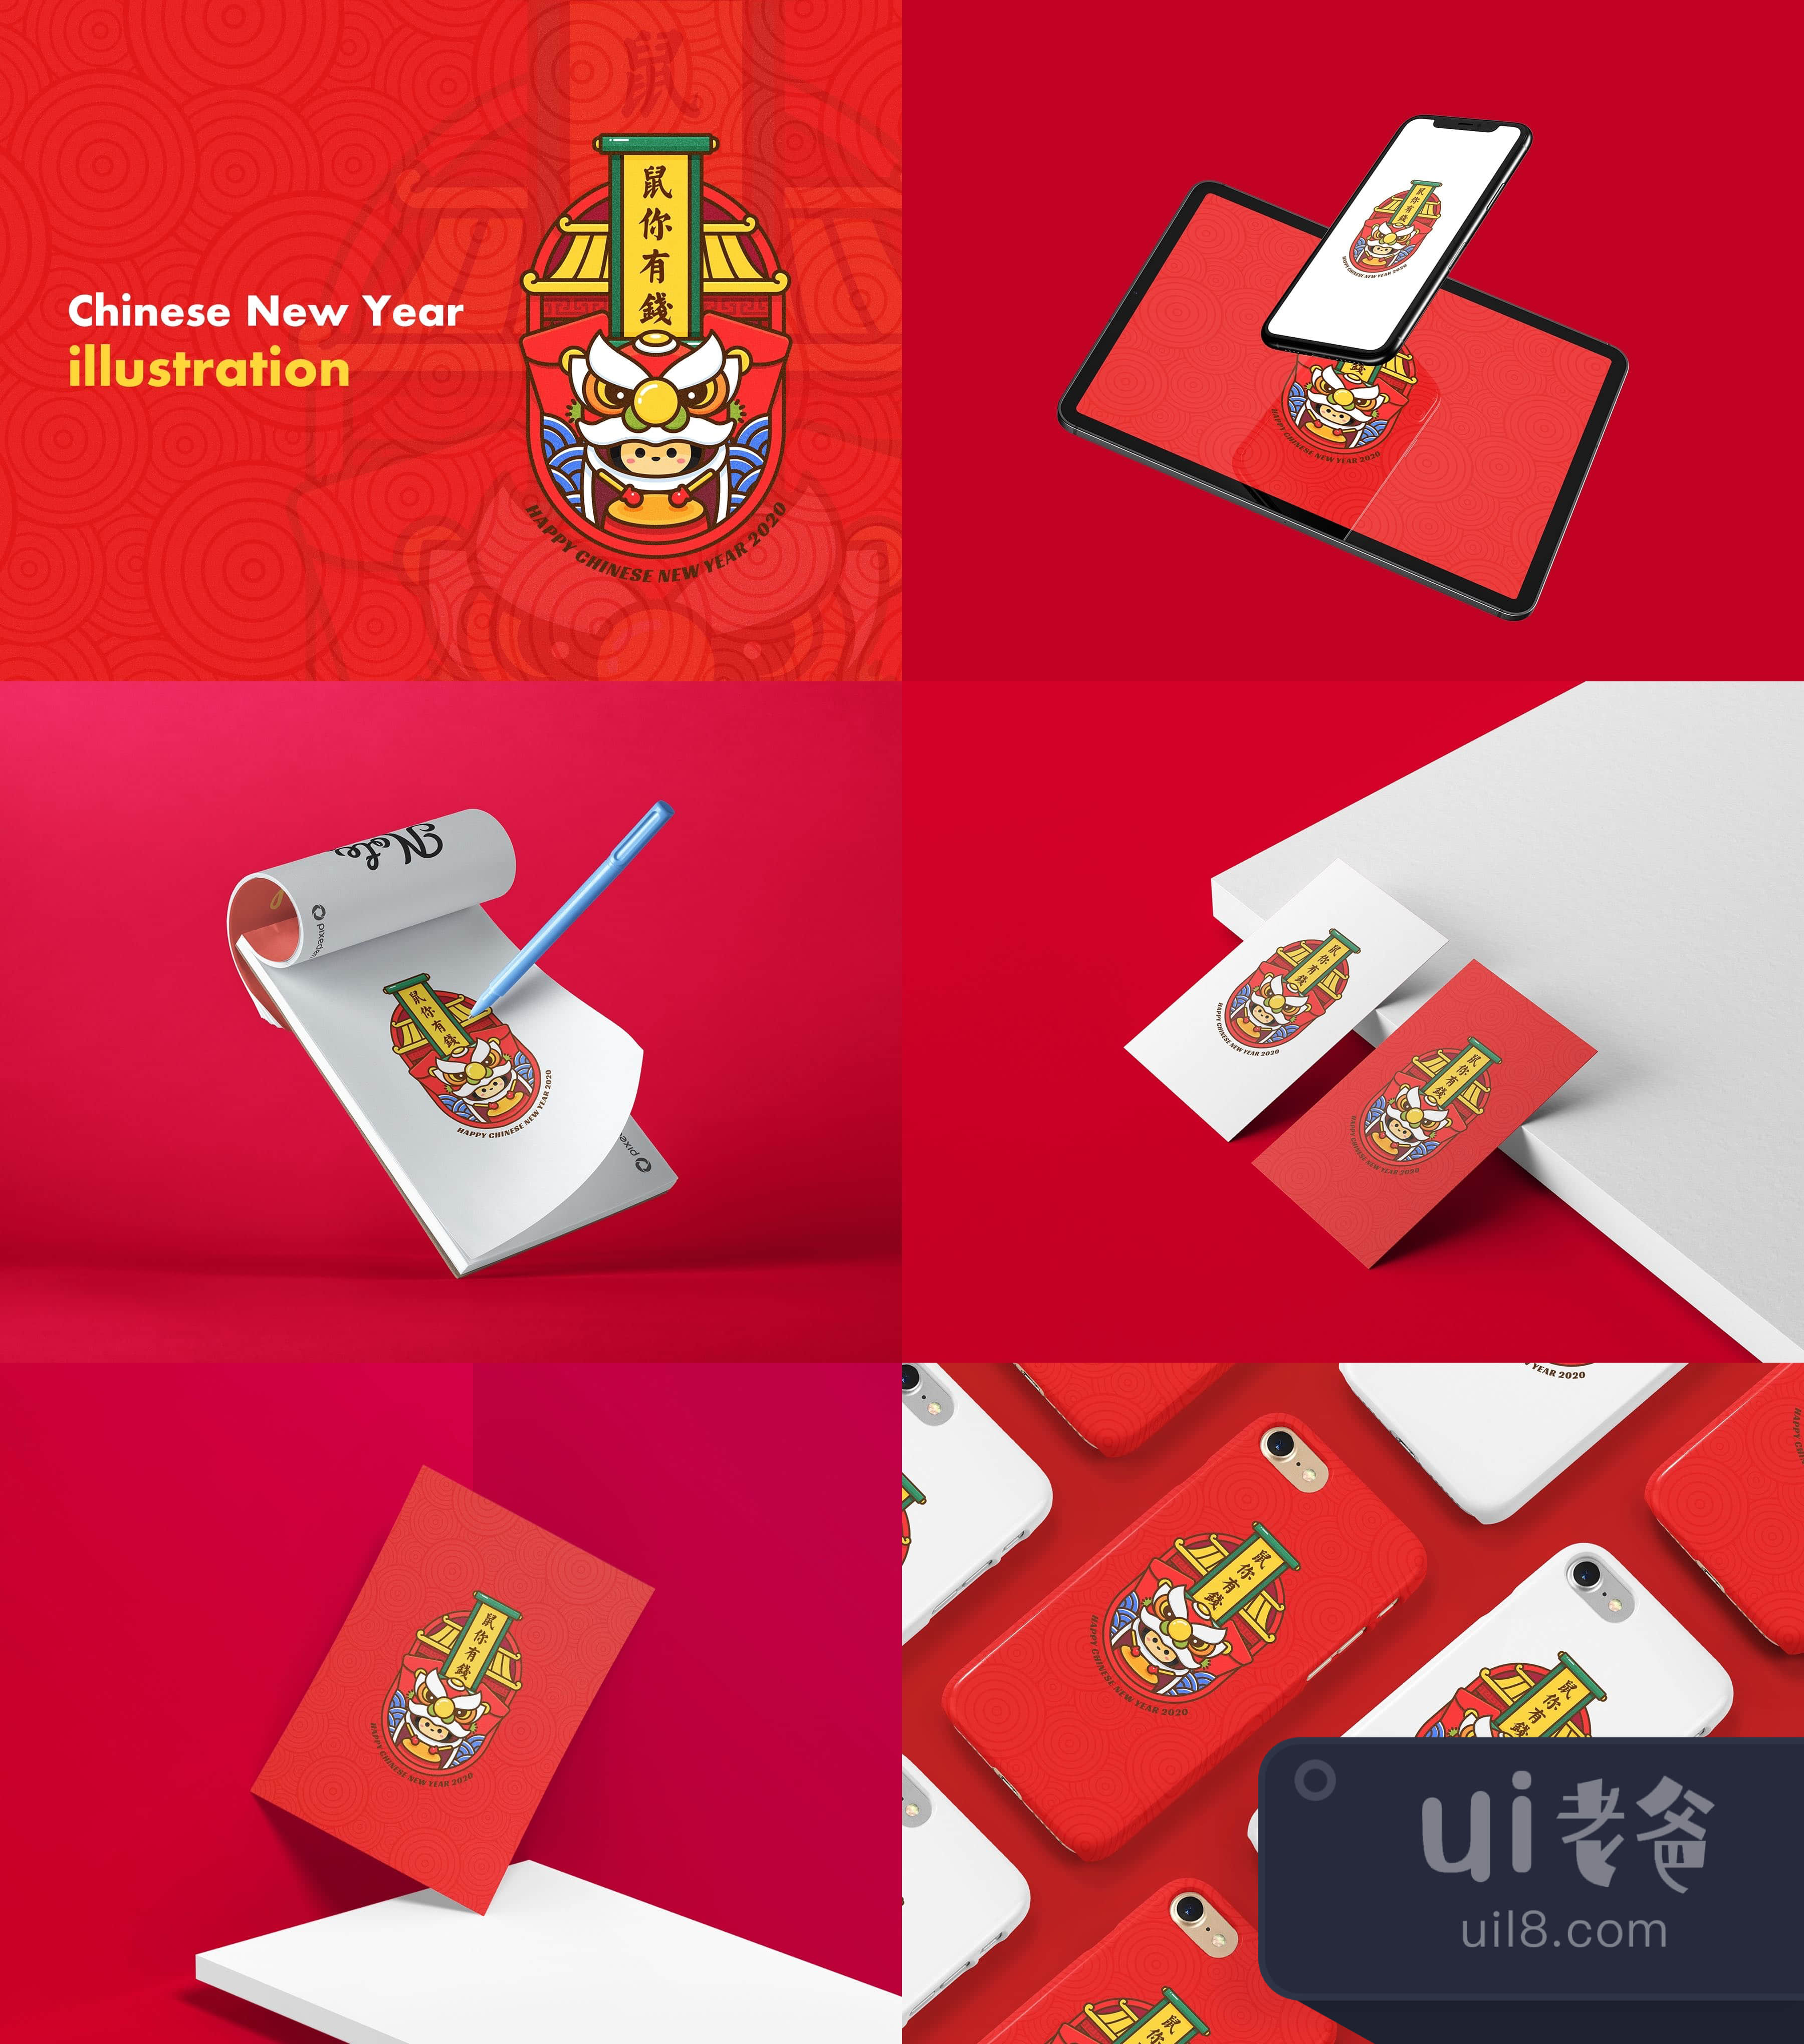 中国新年插图 (Chinese New Year illustration)插图1